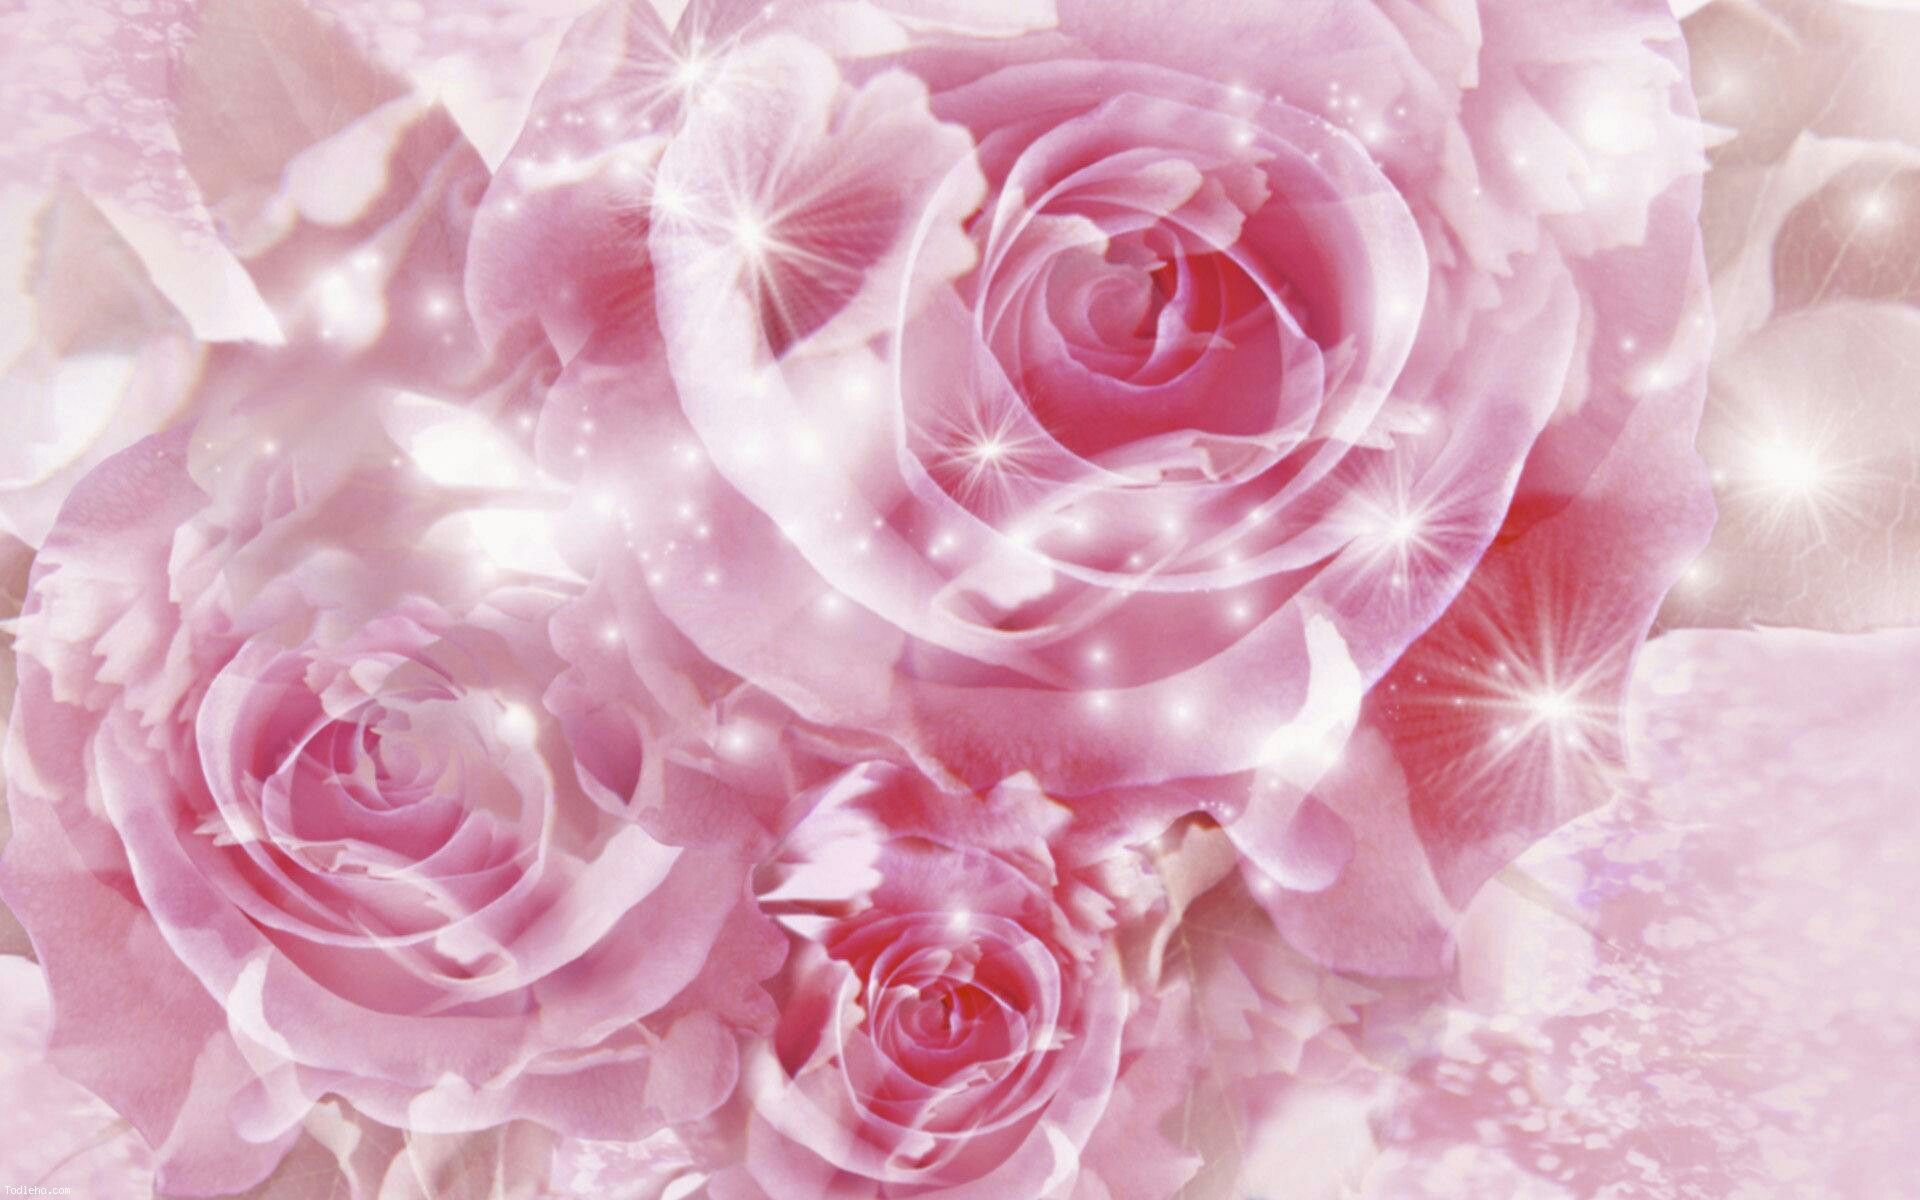 Shining pink roses. Pink flowers wallpaper, Beautiful pink roses, Beautiful flowers